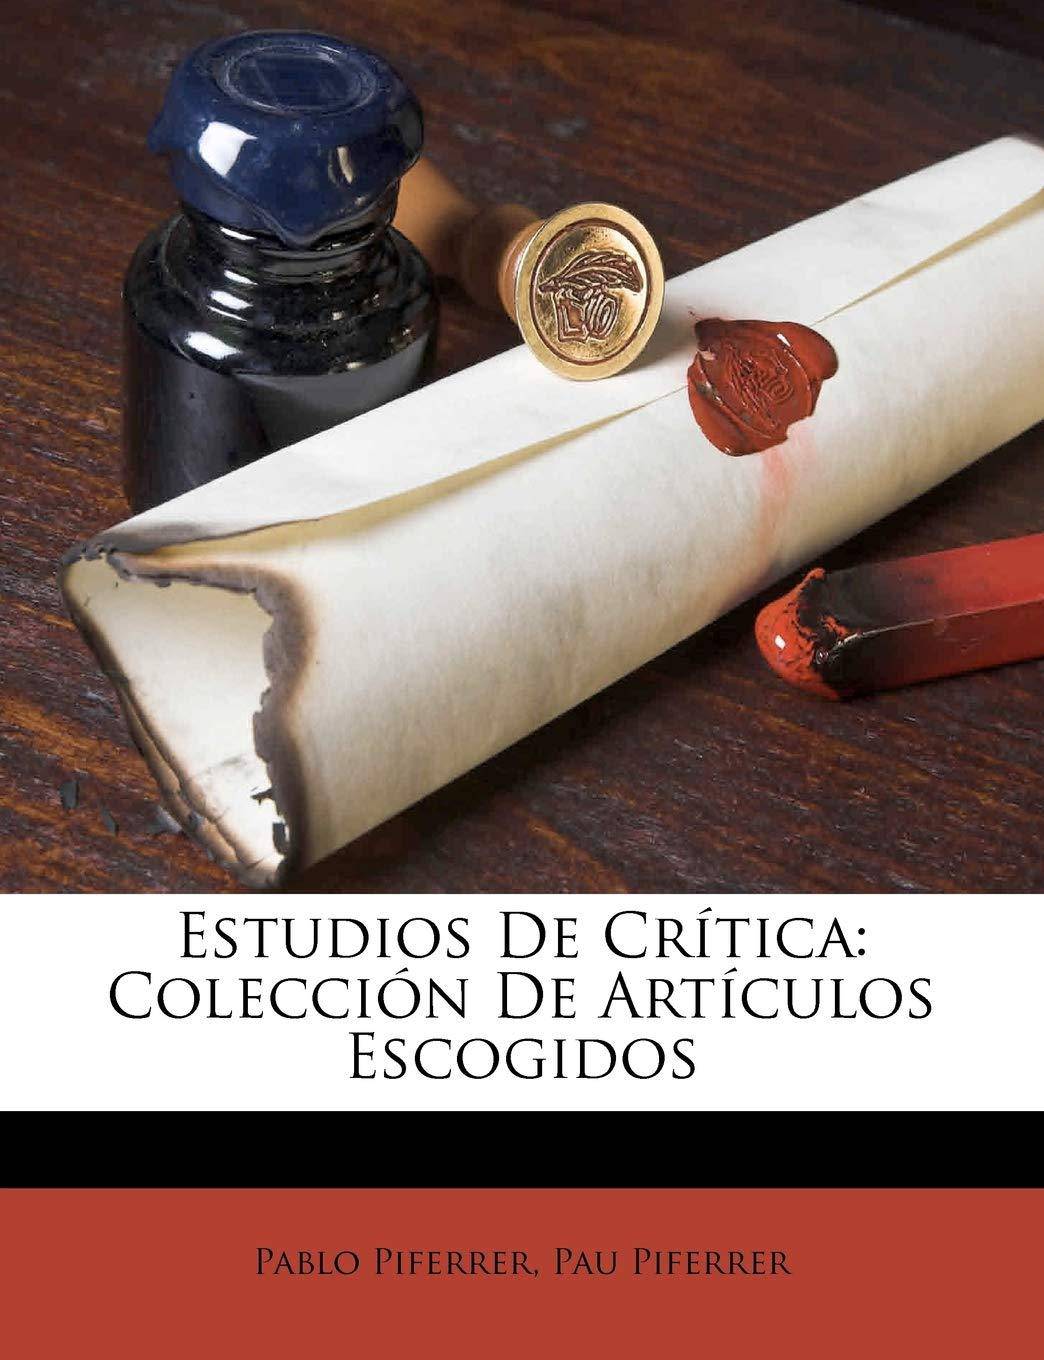 Estudios De Crítica: Colección De Artículos Escogidos - SureShot Books Publishing LLC